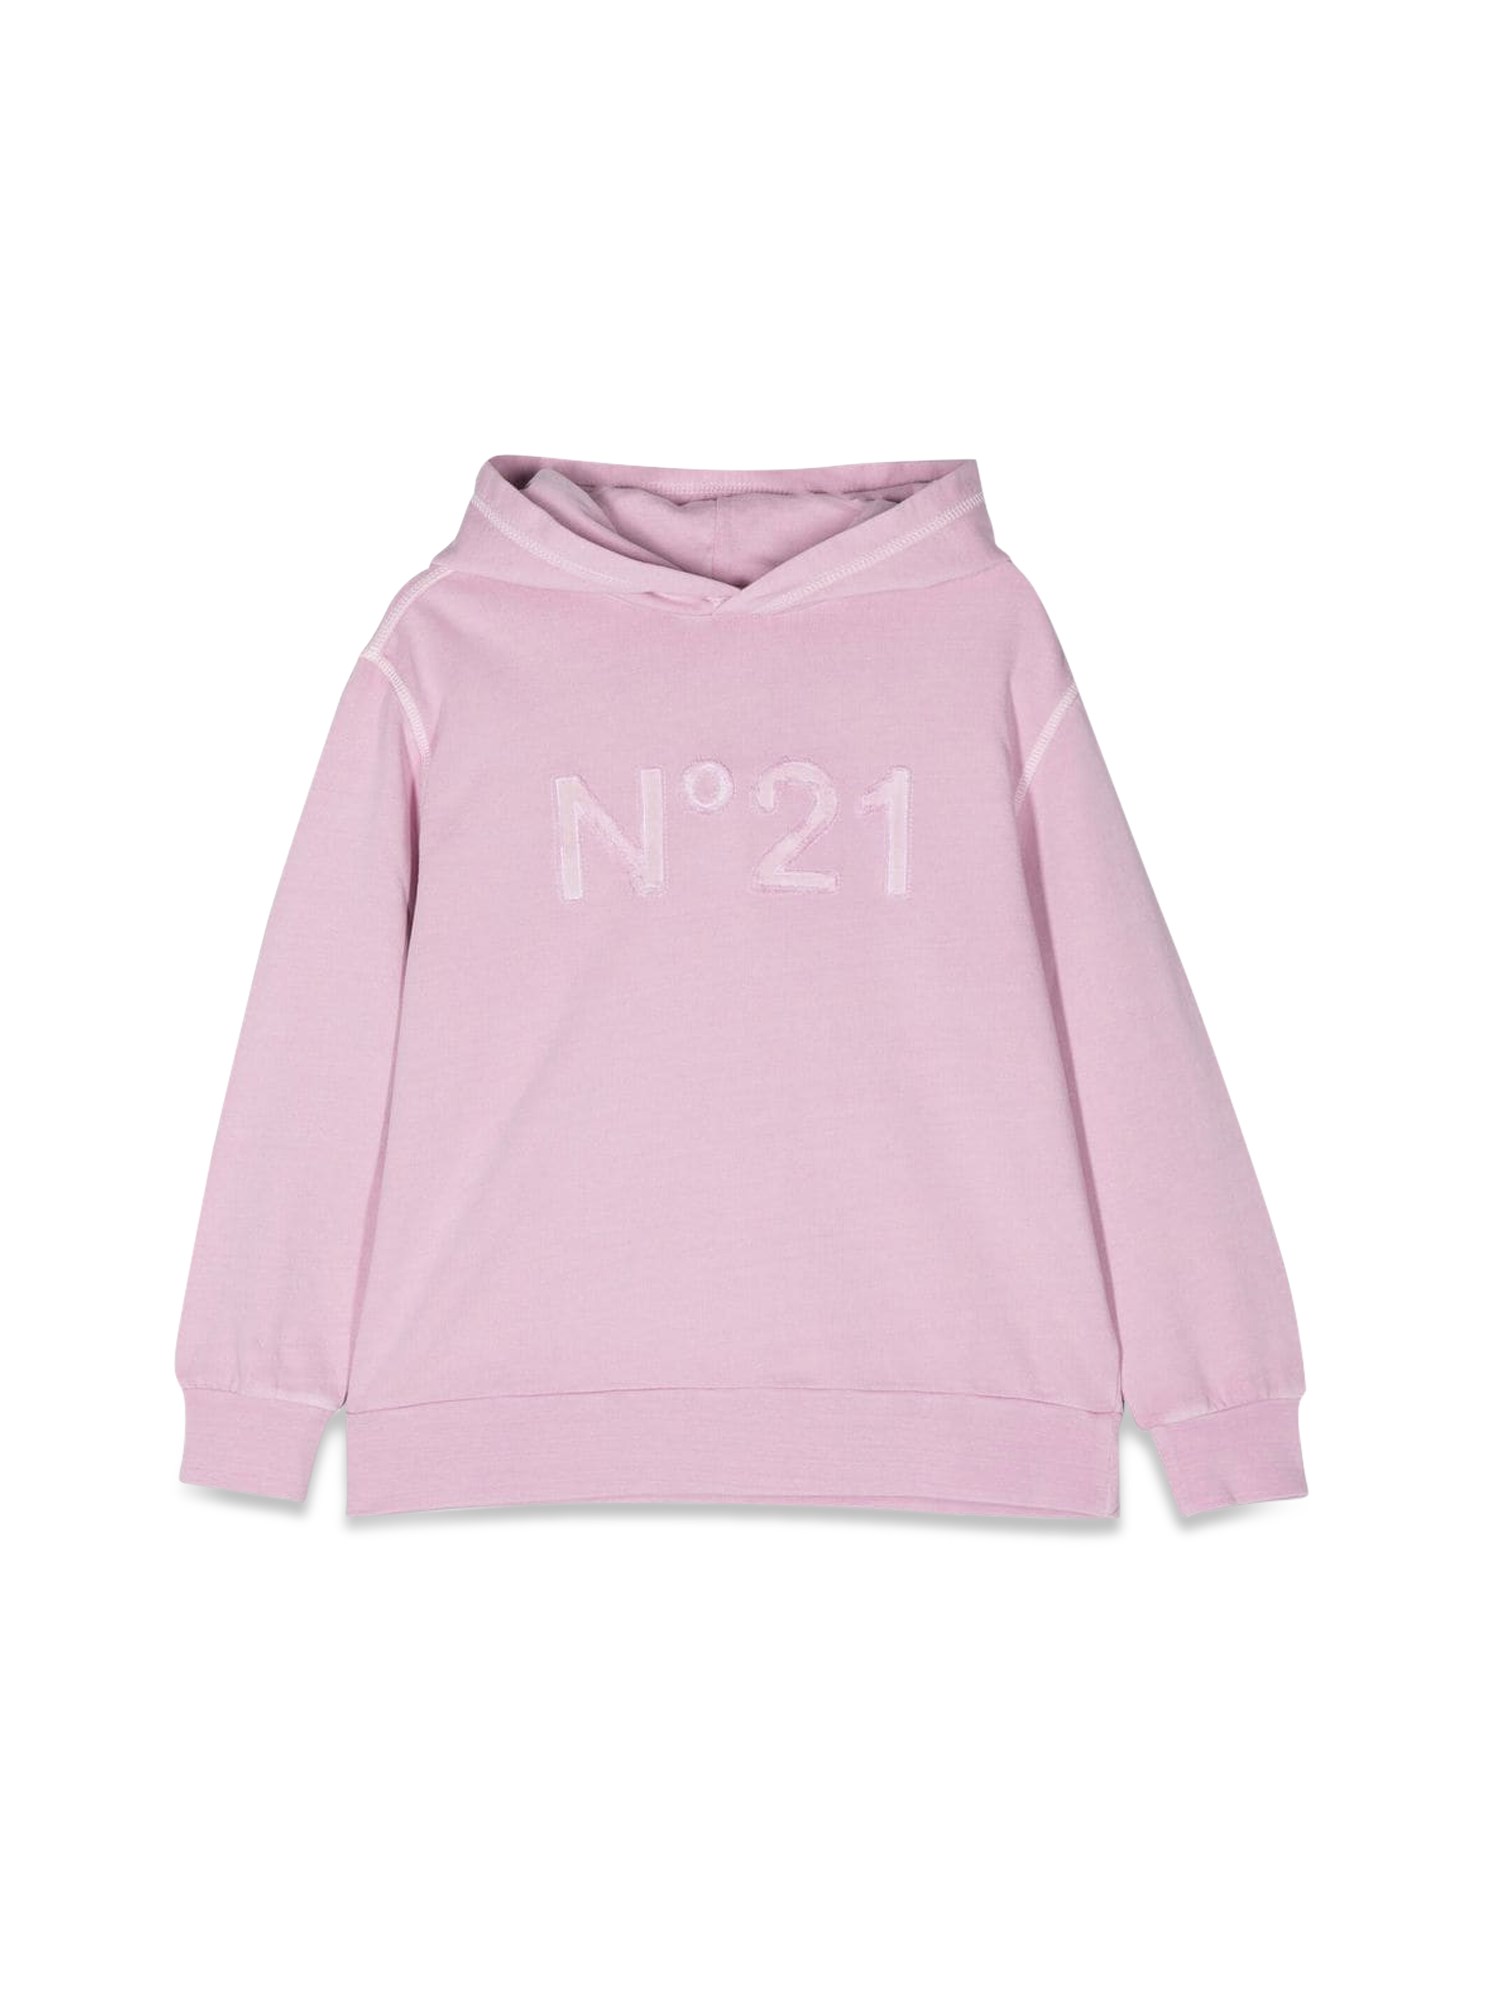 n°21 logo hoodie